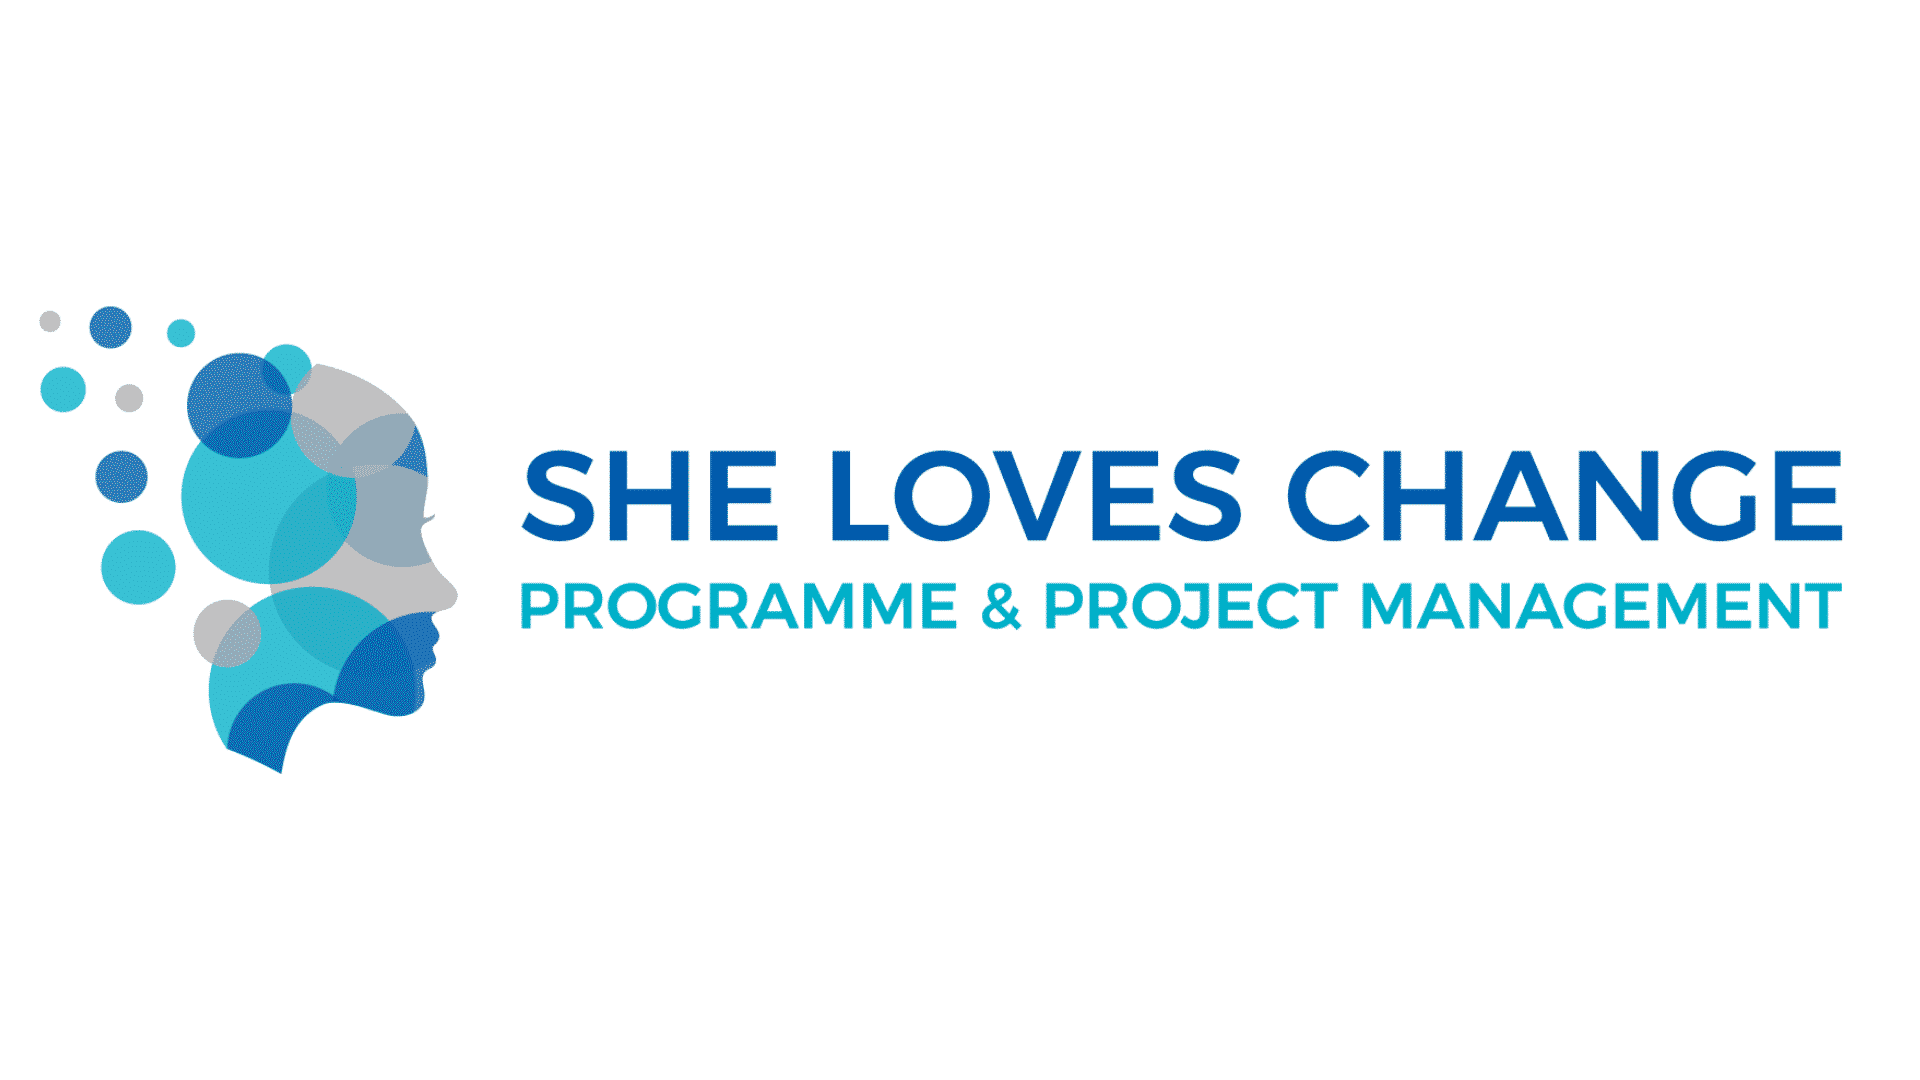 She Loves Change Ltd